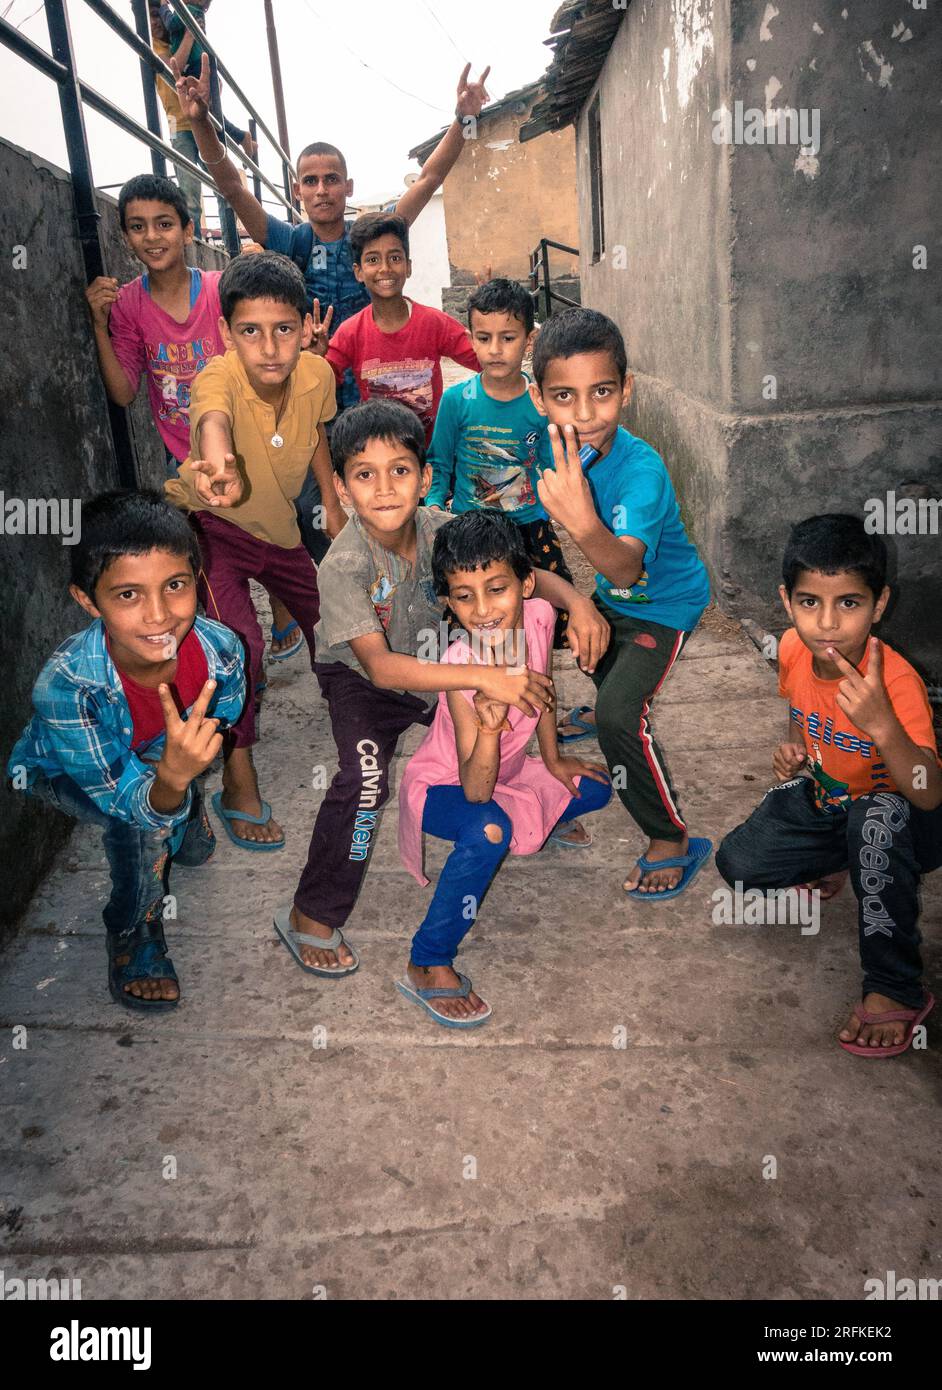 Oktober 14. 2022 Uttarakhand, Indien. Lebhafte Dorfkinder, die ihre Momente in Uttarakhband, Indien, voller Freude genießen. Eine Feier der sorglosen Kindheit im Stockfoto